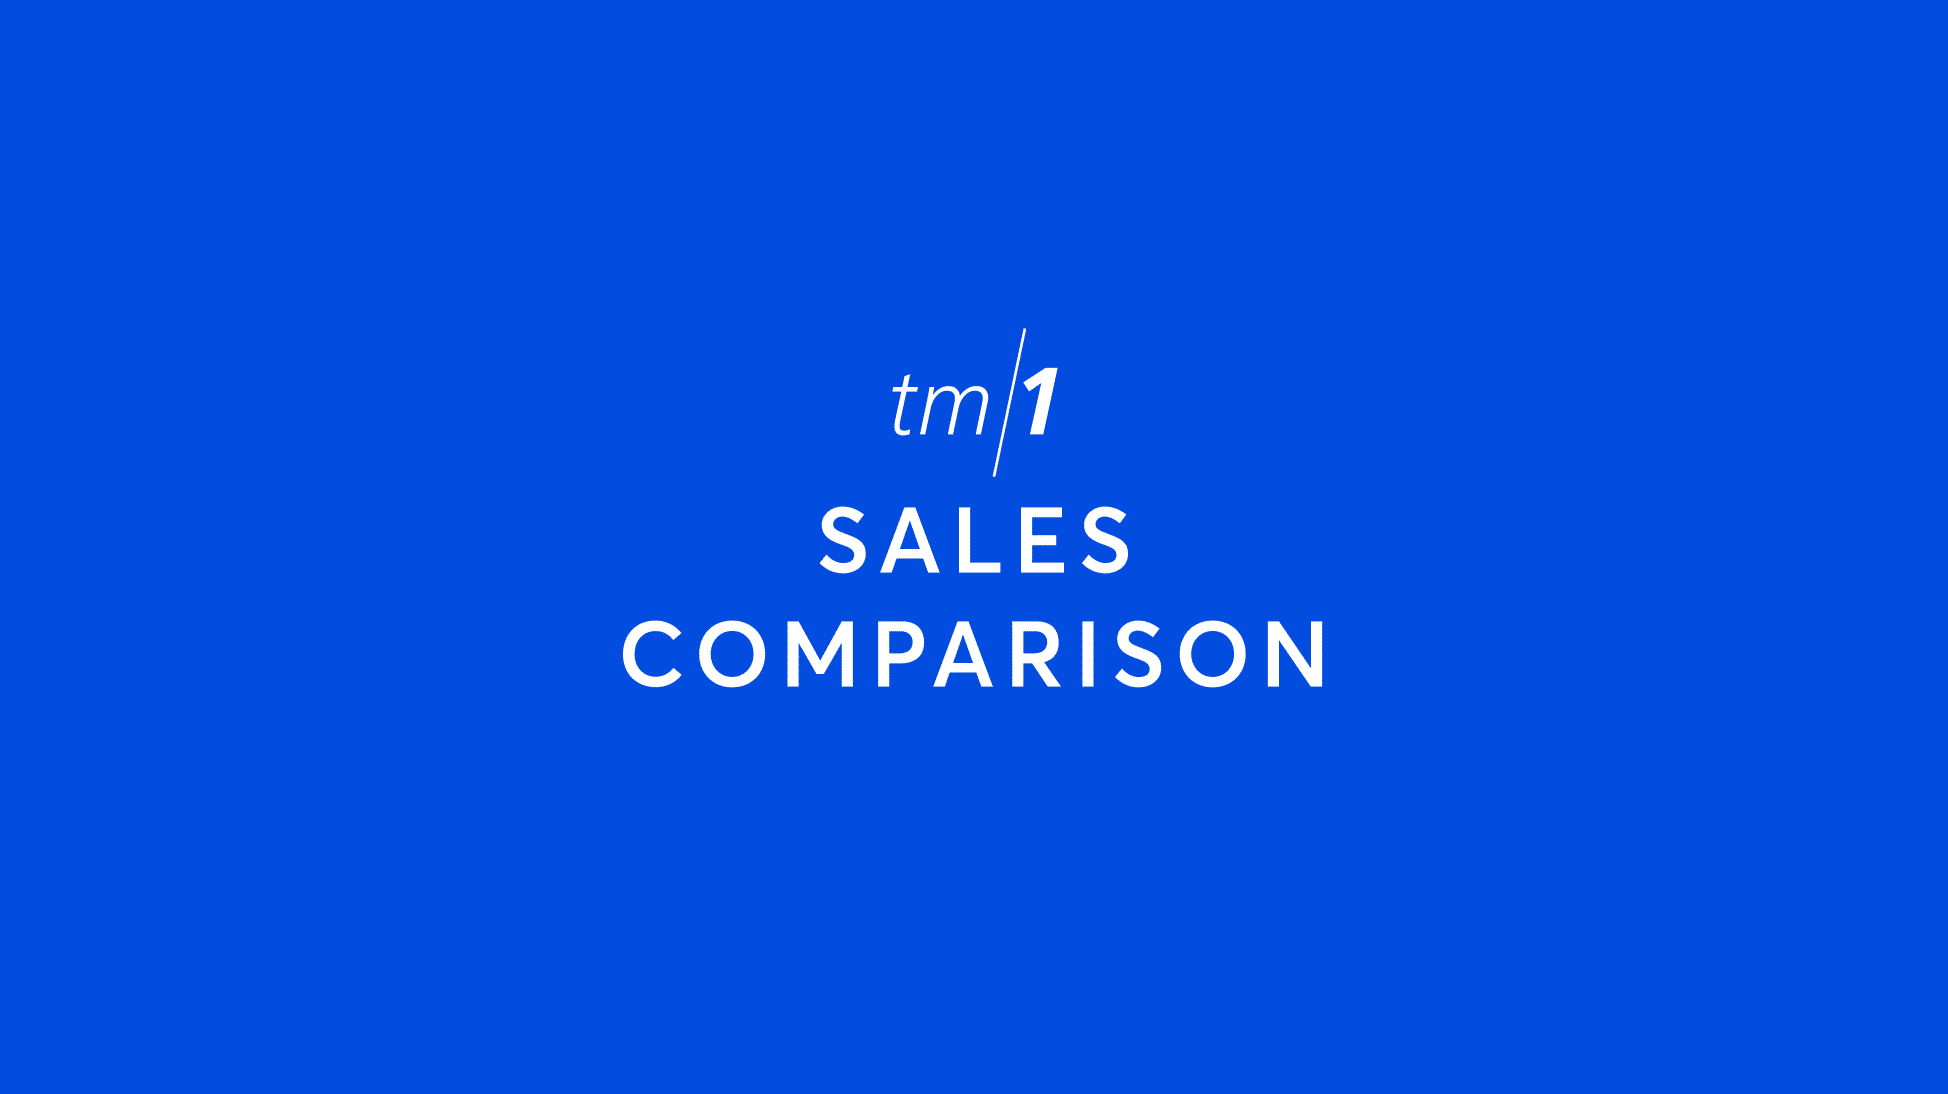 tm1 sales comparison logo